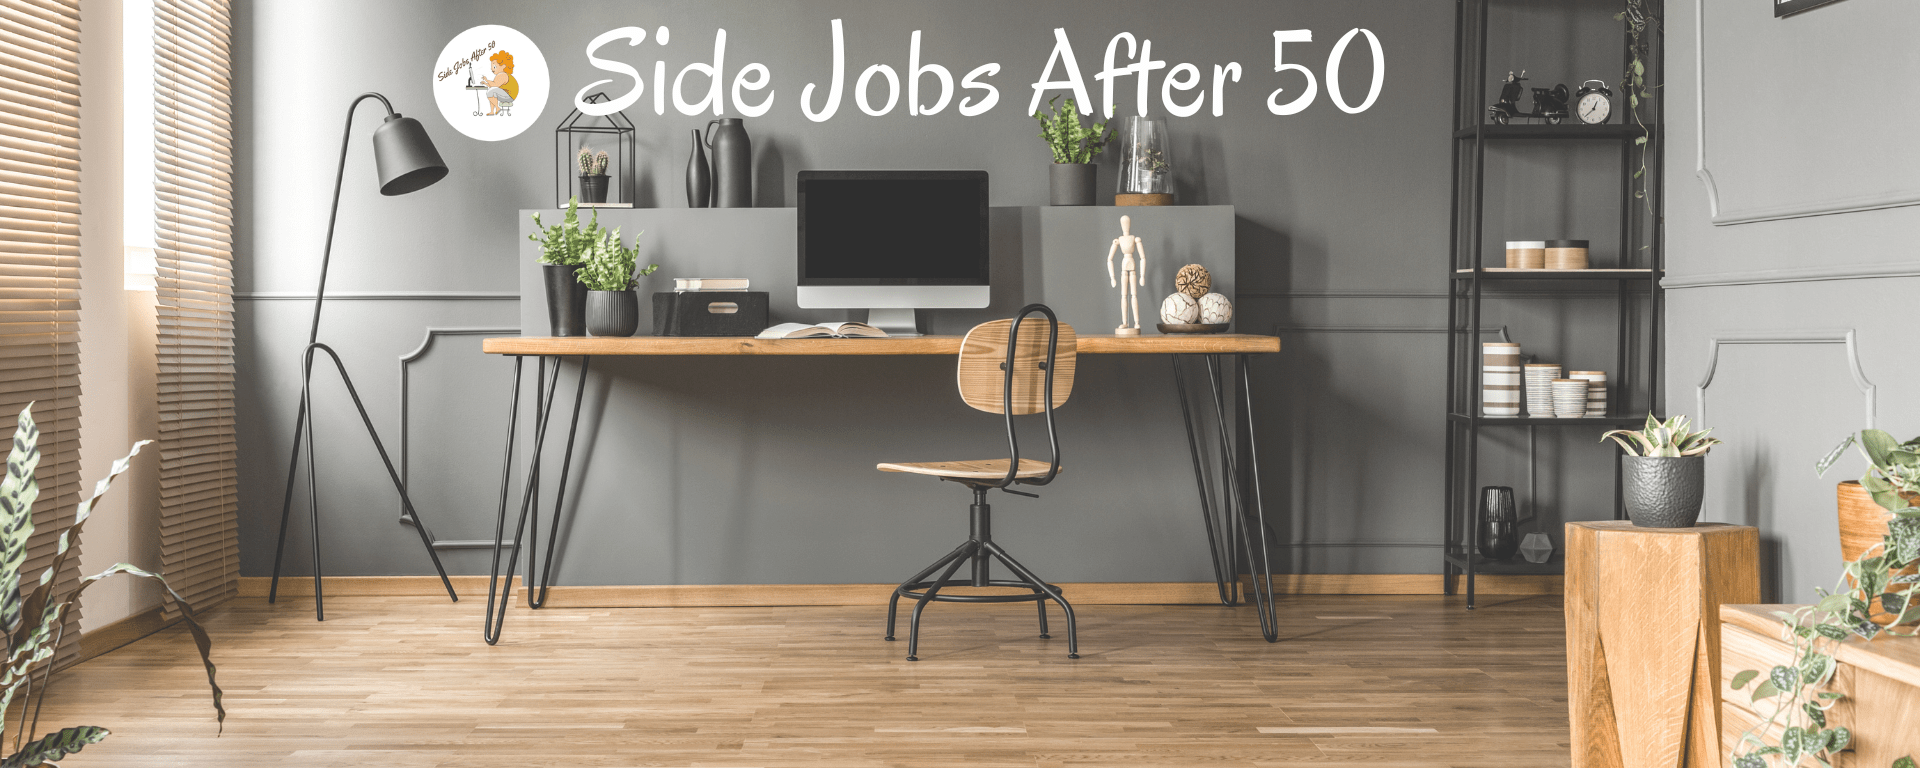 Side Jobs After 50 Website Banner